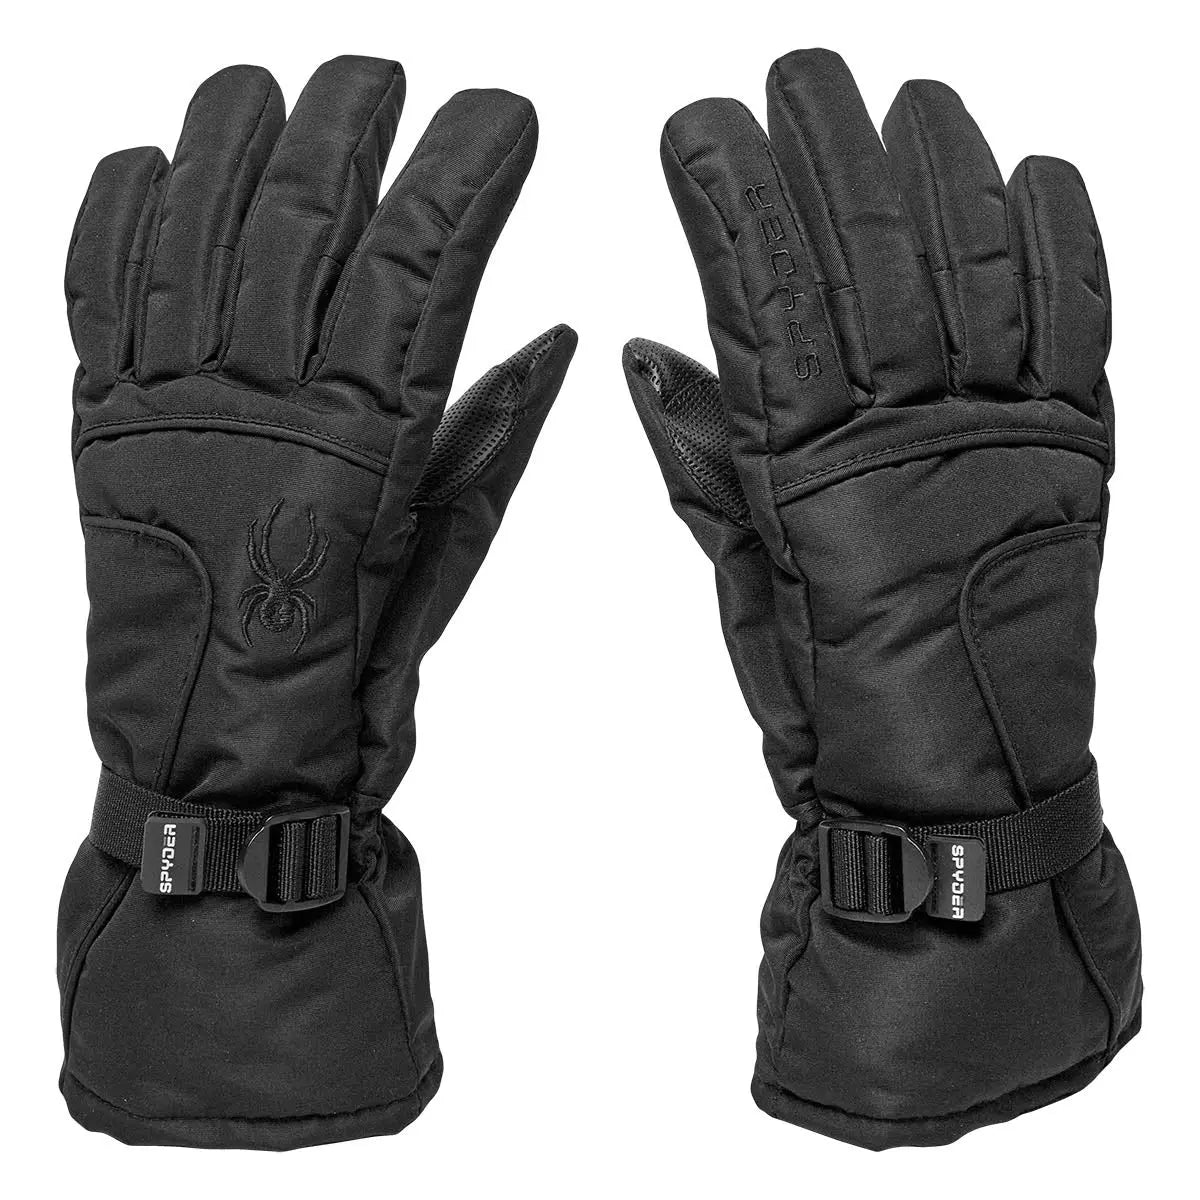 Image of Spyder Men's Shredder Ski Gloves